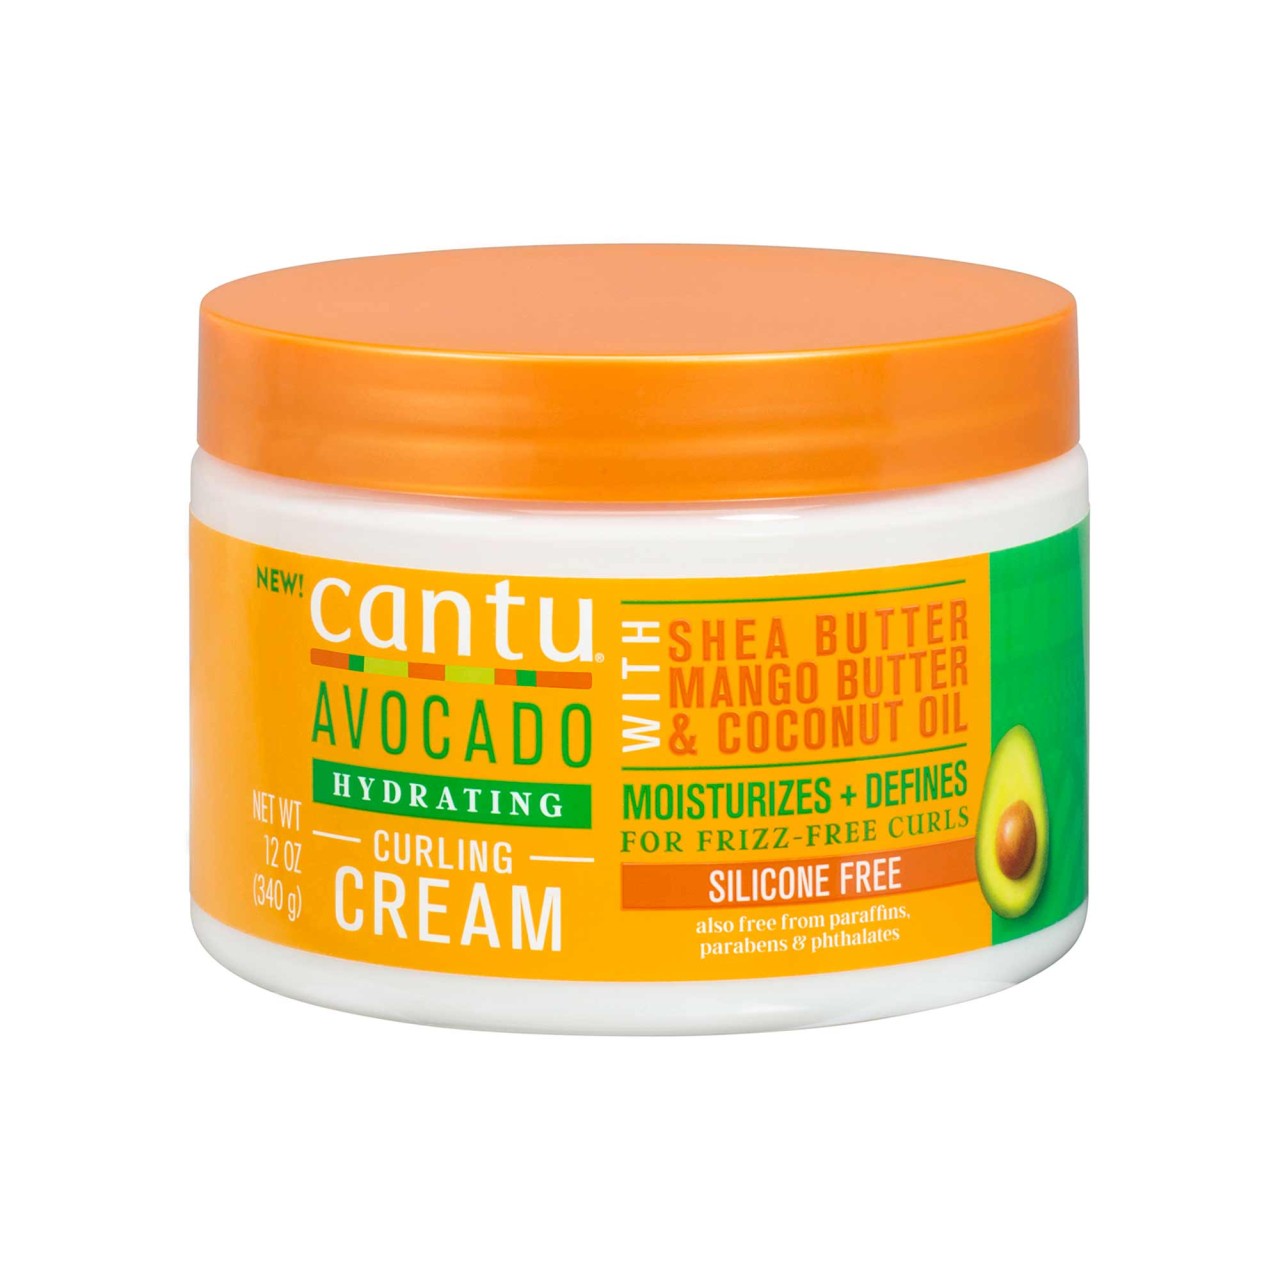 cantu - Avocado Curling Cream - 